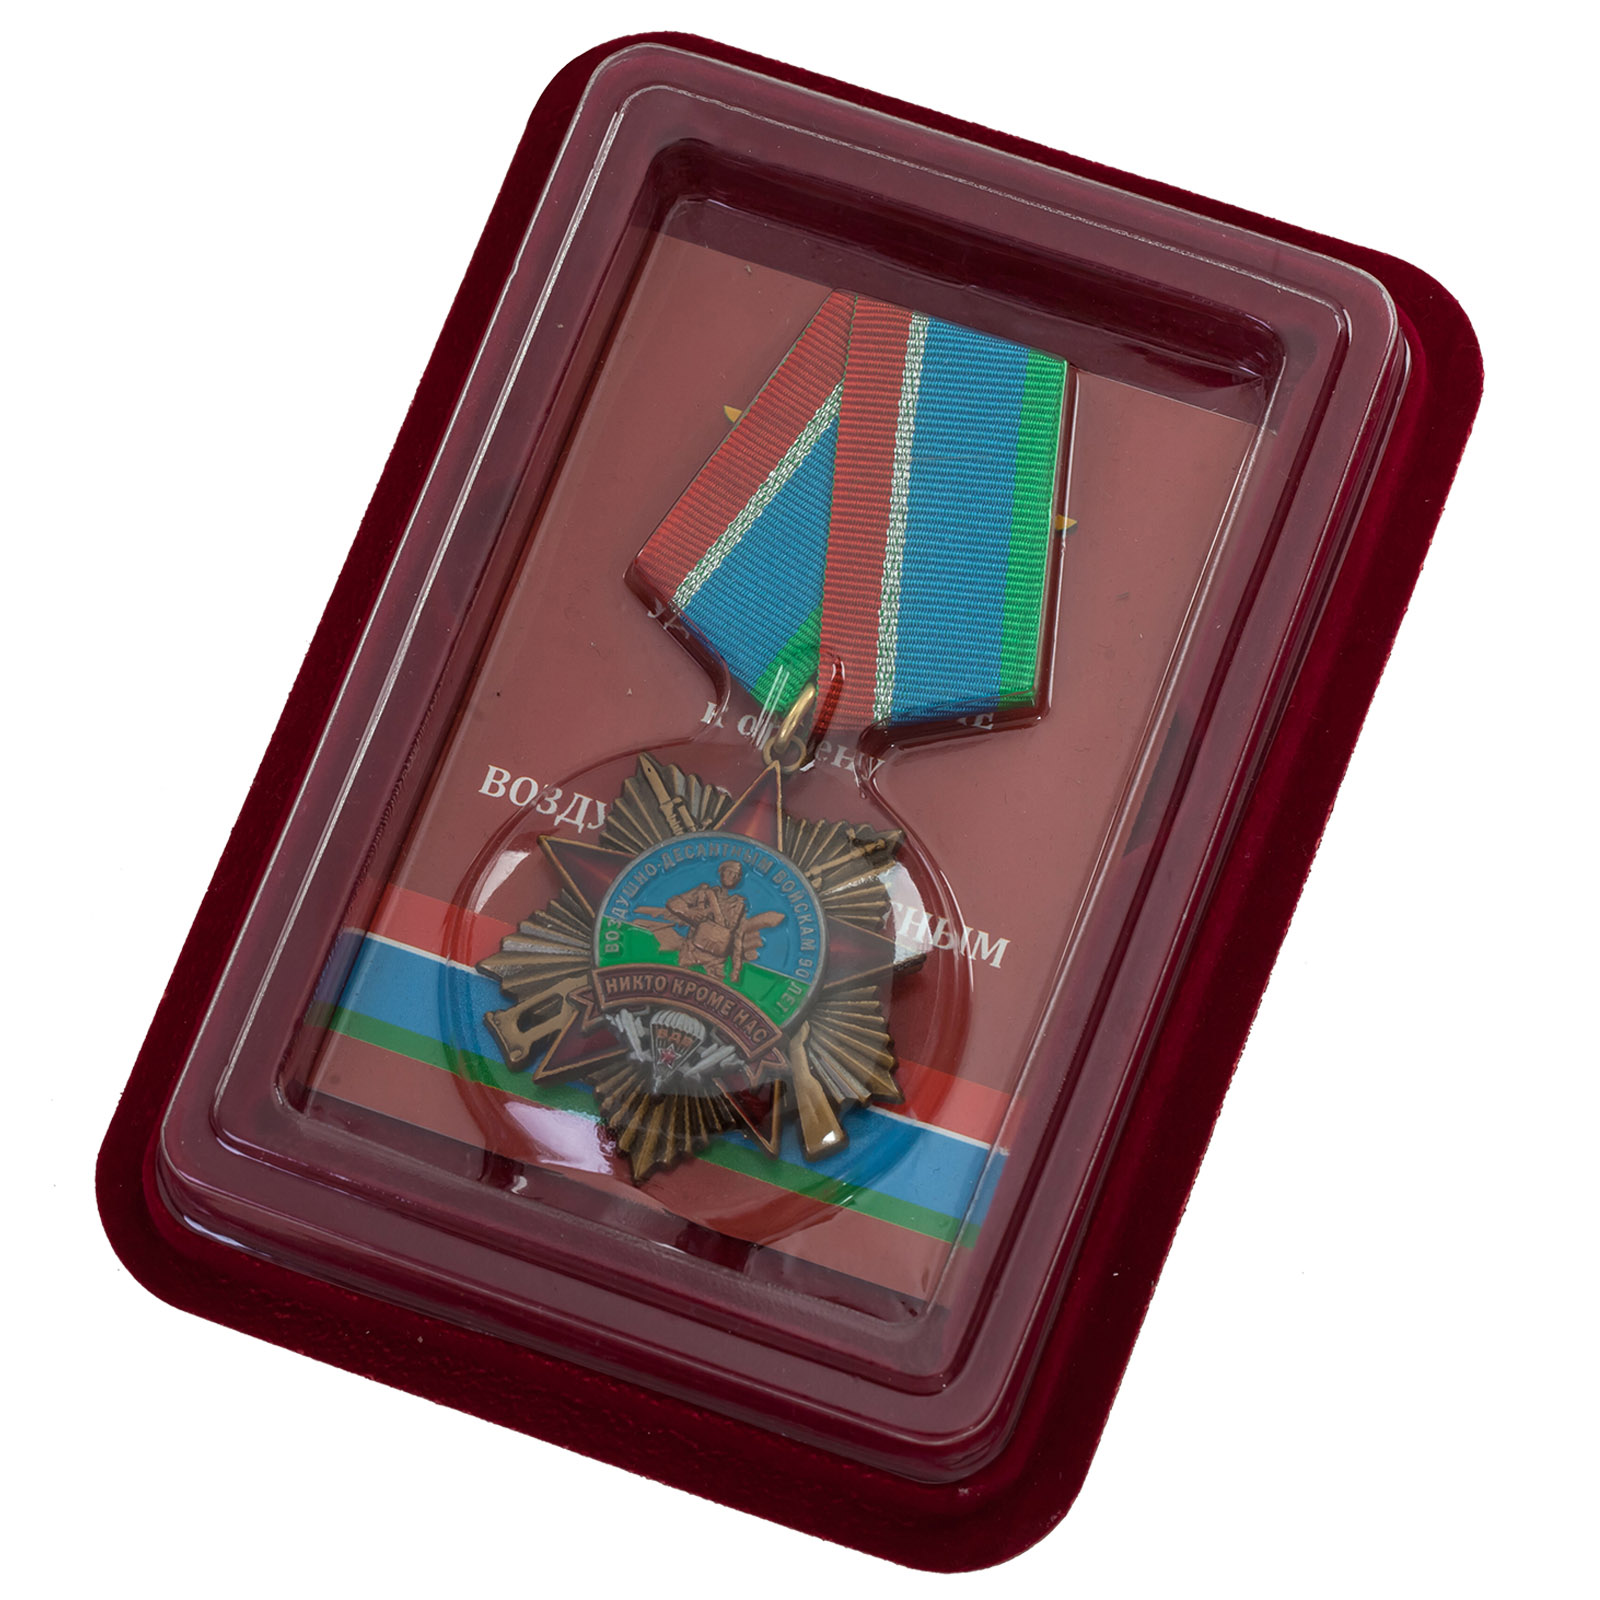 Купить орден на колодке "90 лет Воздушно-десантным войскам" в футляре по сбалансированной цене